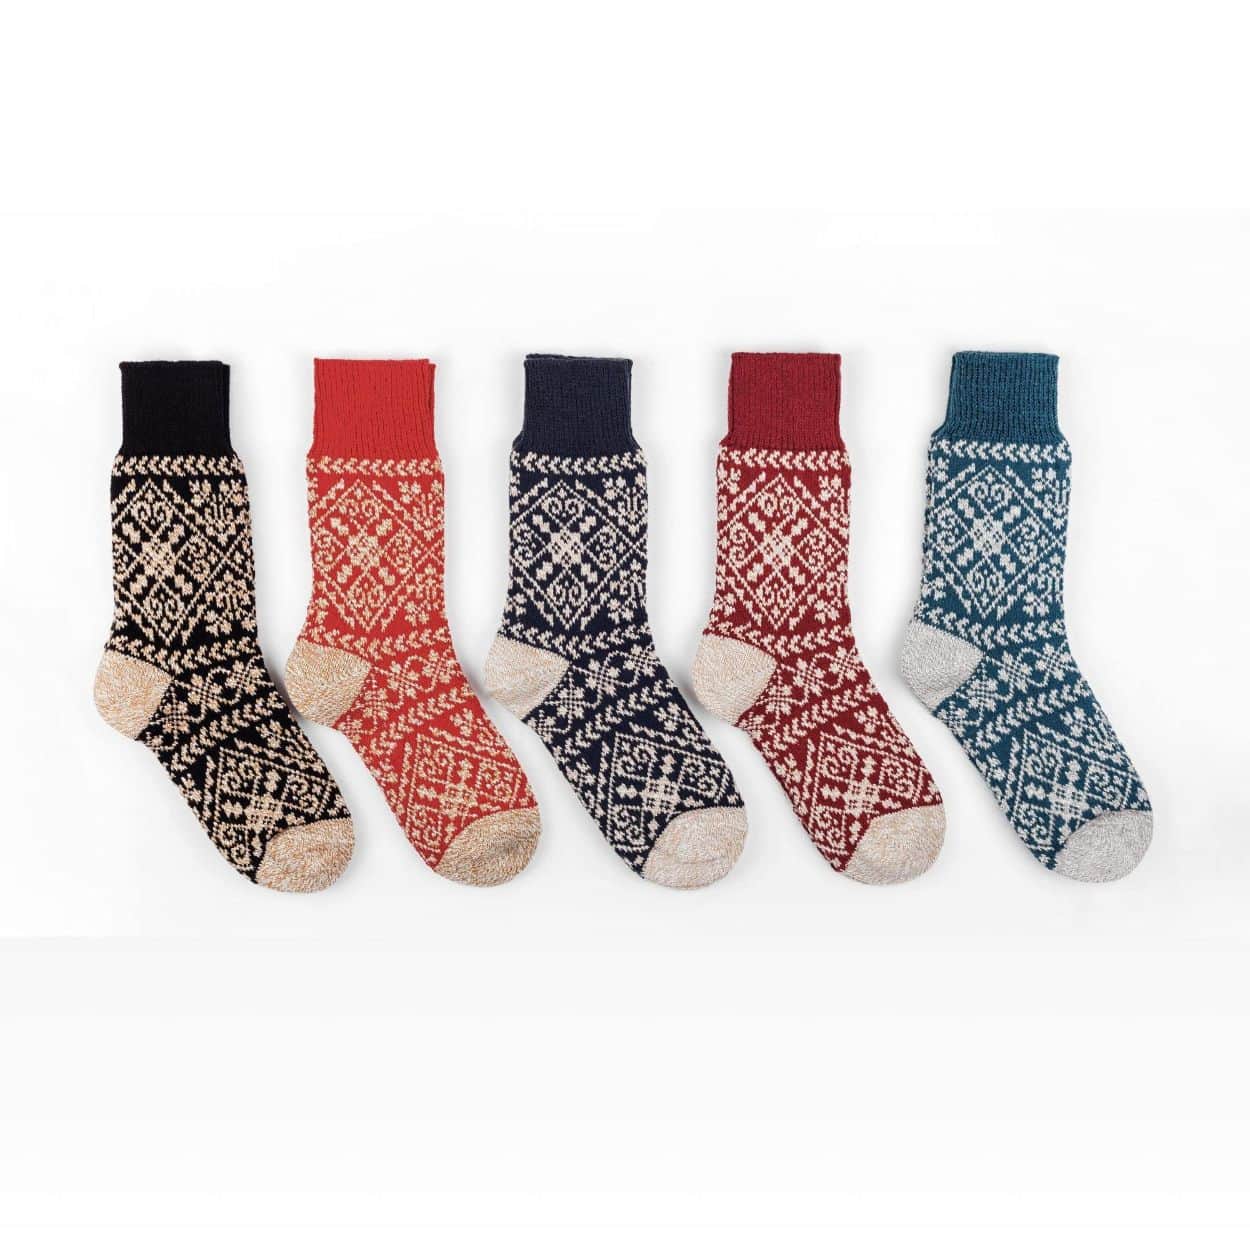 Nordic Zelta Socks in Black, Amber, Navy, Crimson or Teal - Unisex: Large